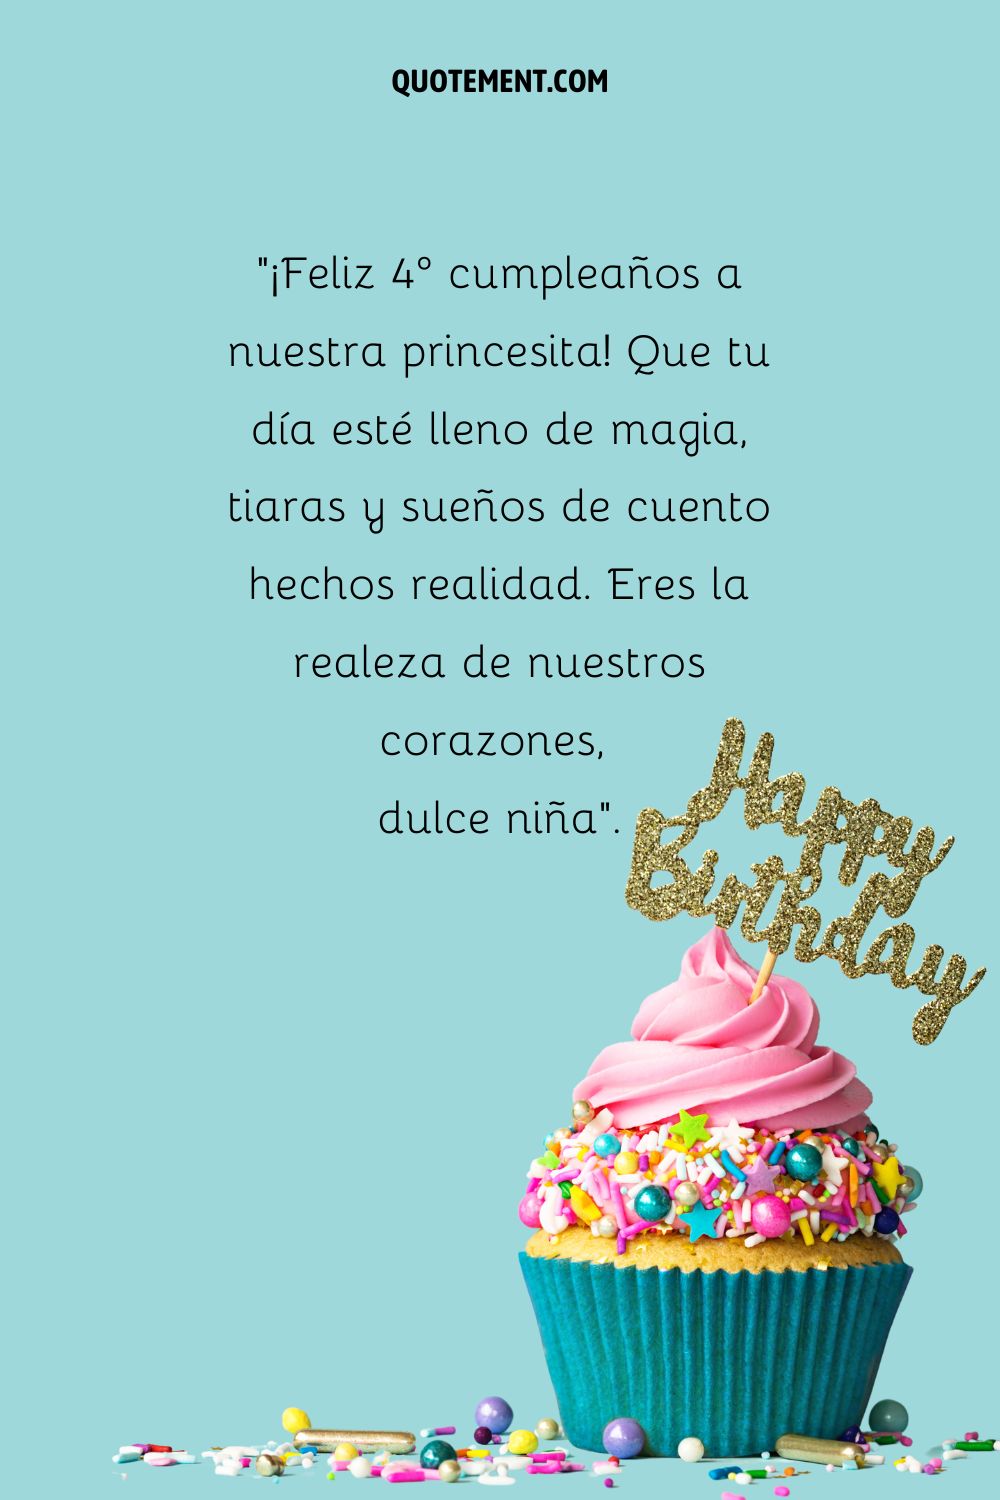 cupcake azul y rosa que representa el deseo de cumpleaños de una niña de 4 años